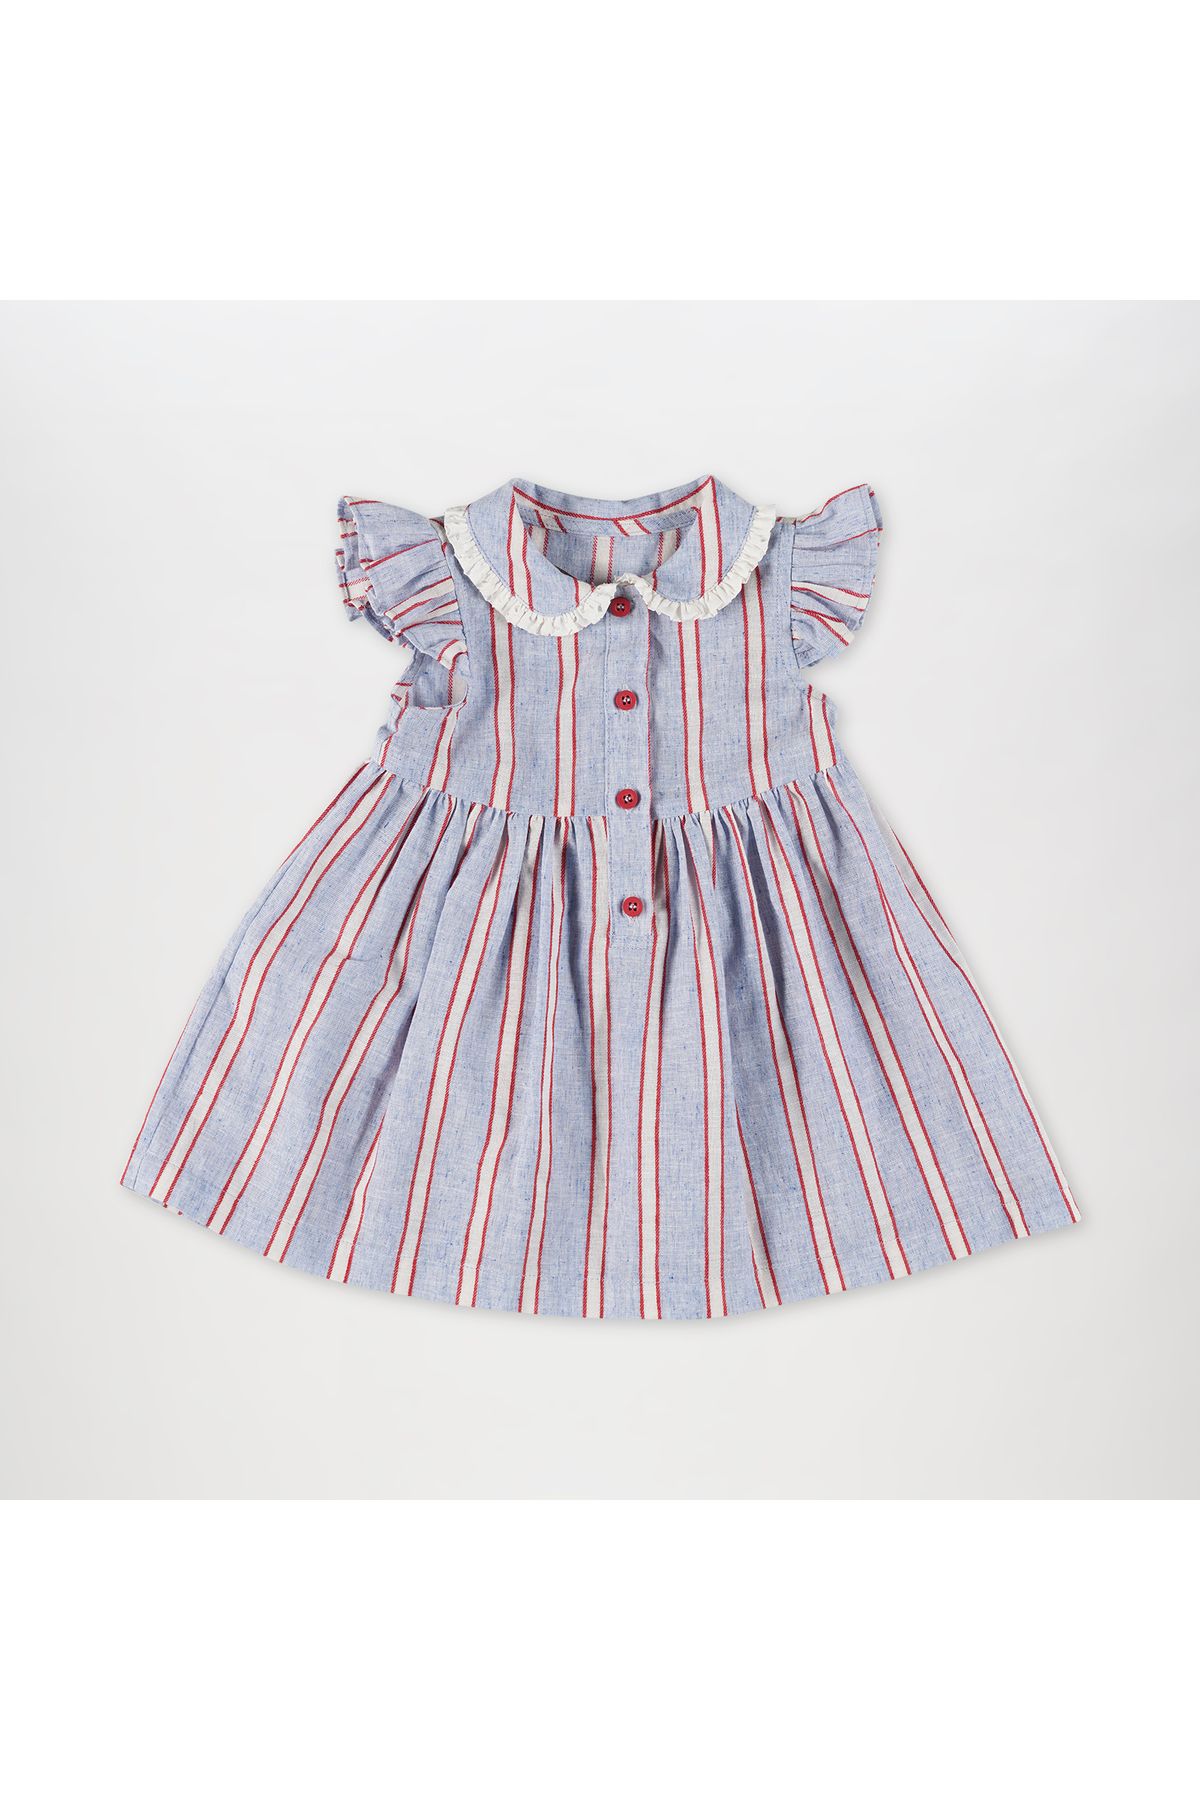 Panço Kız Bebek Çizgi Desenli Elbise